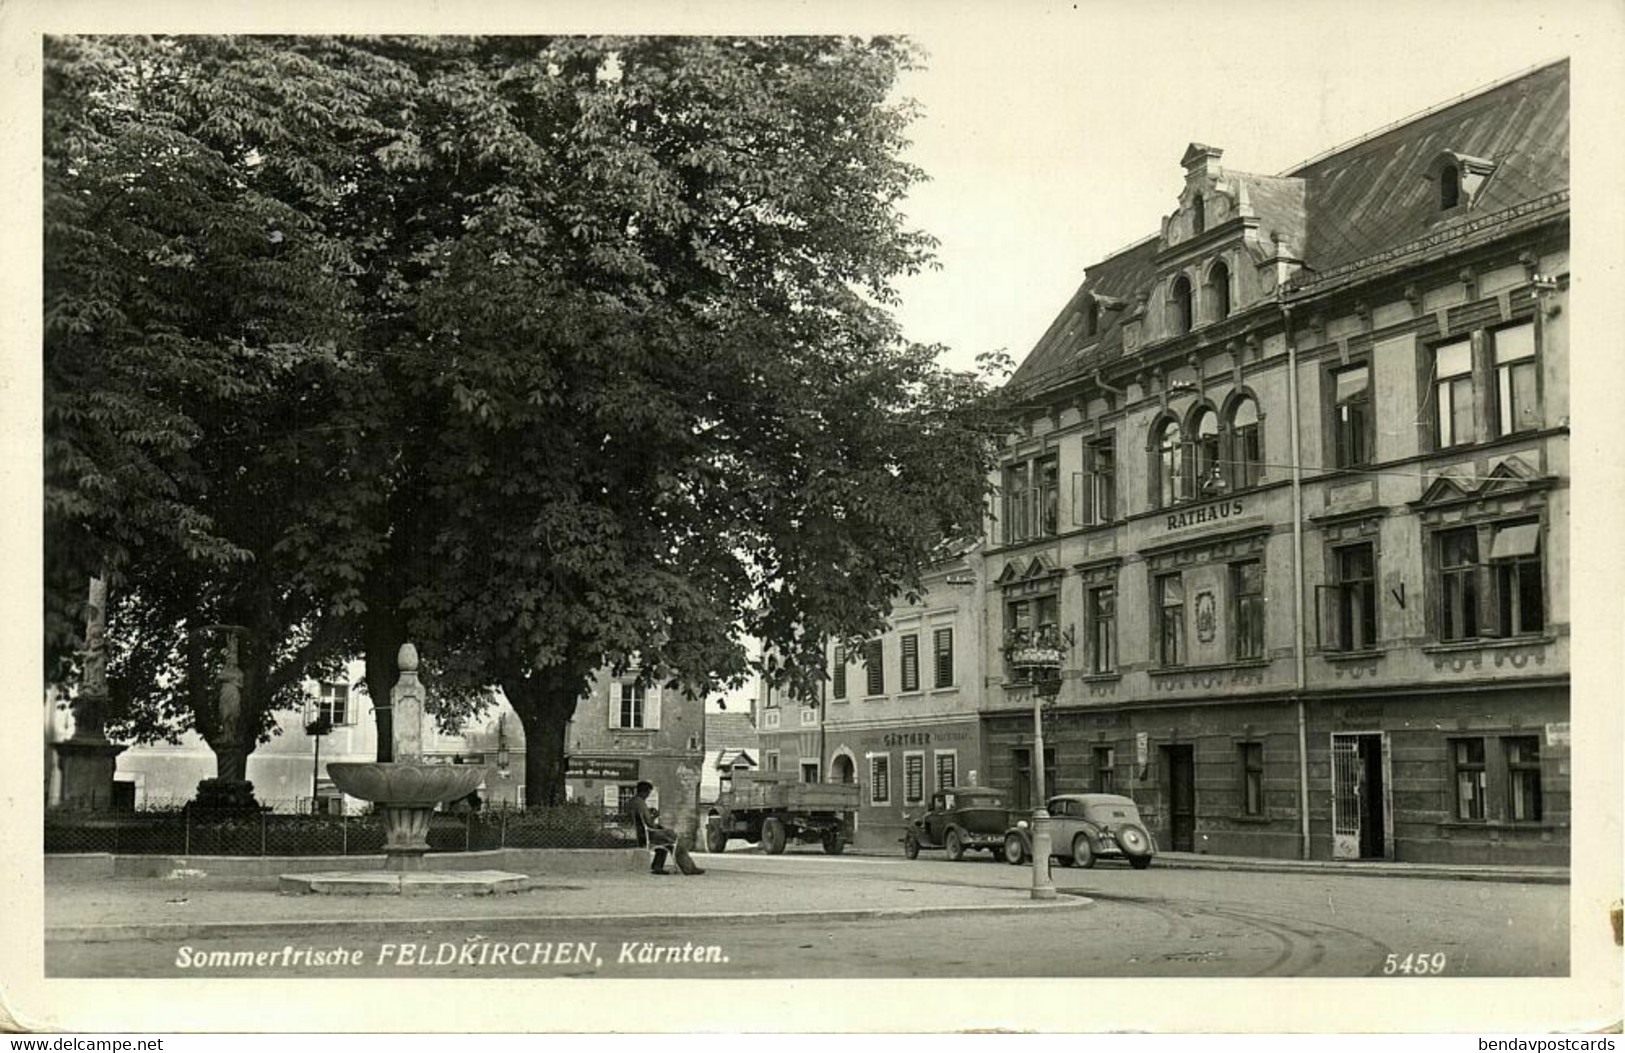 Austria, FELDKIRCHEN, Kärnten, Sommerfrische, Gasthof Gärther (1950s) RPPC - Feldkirchen In Kärnten